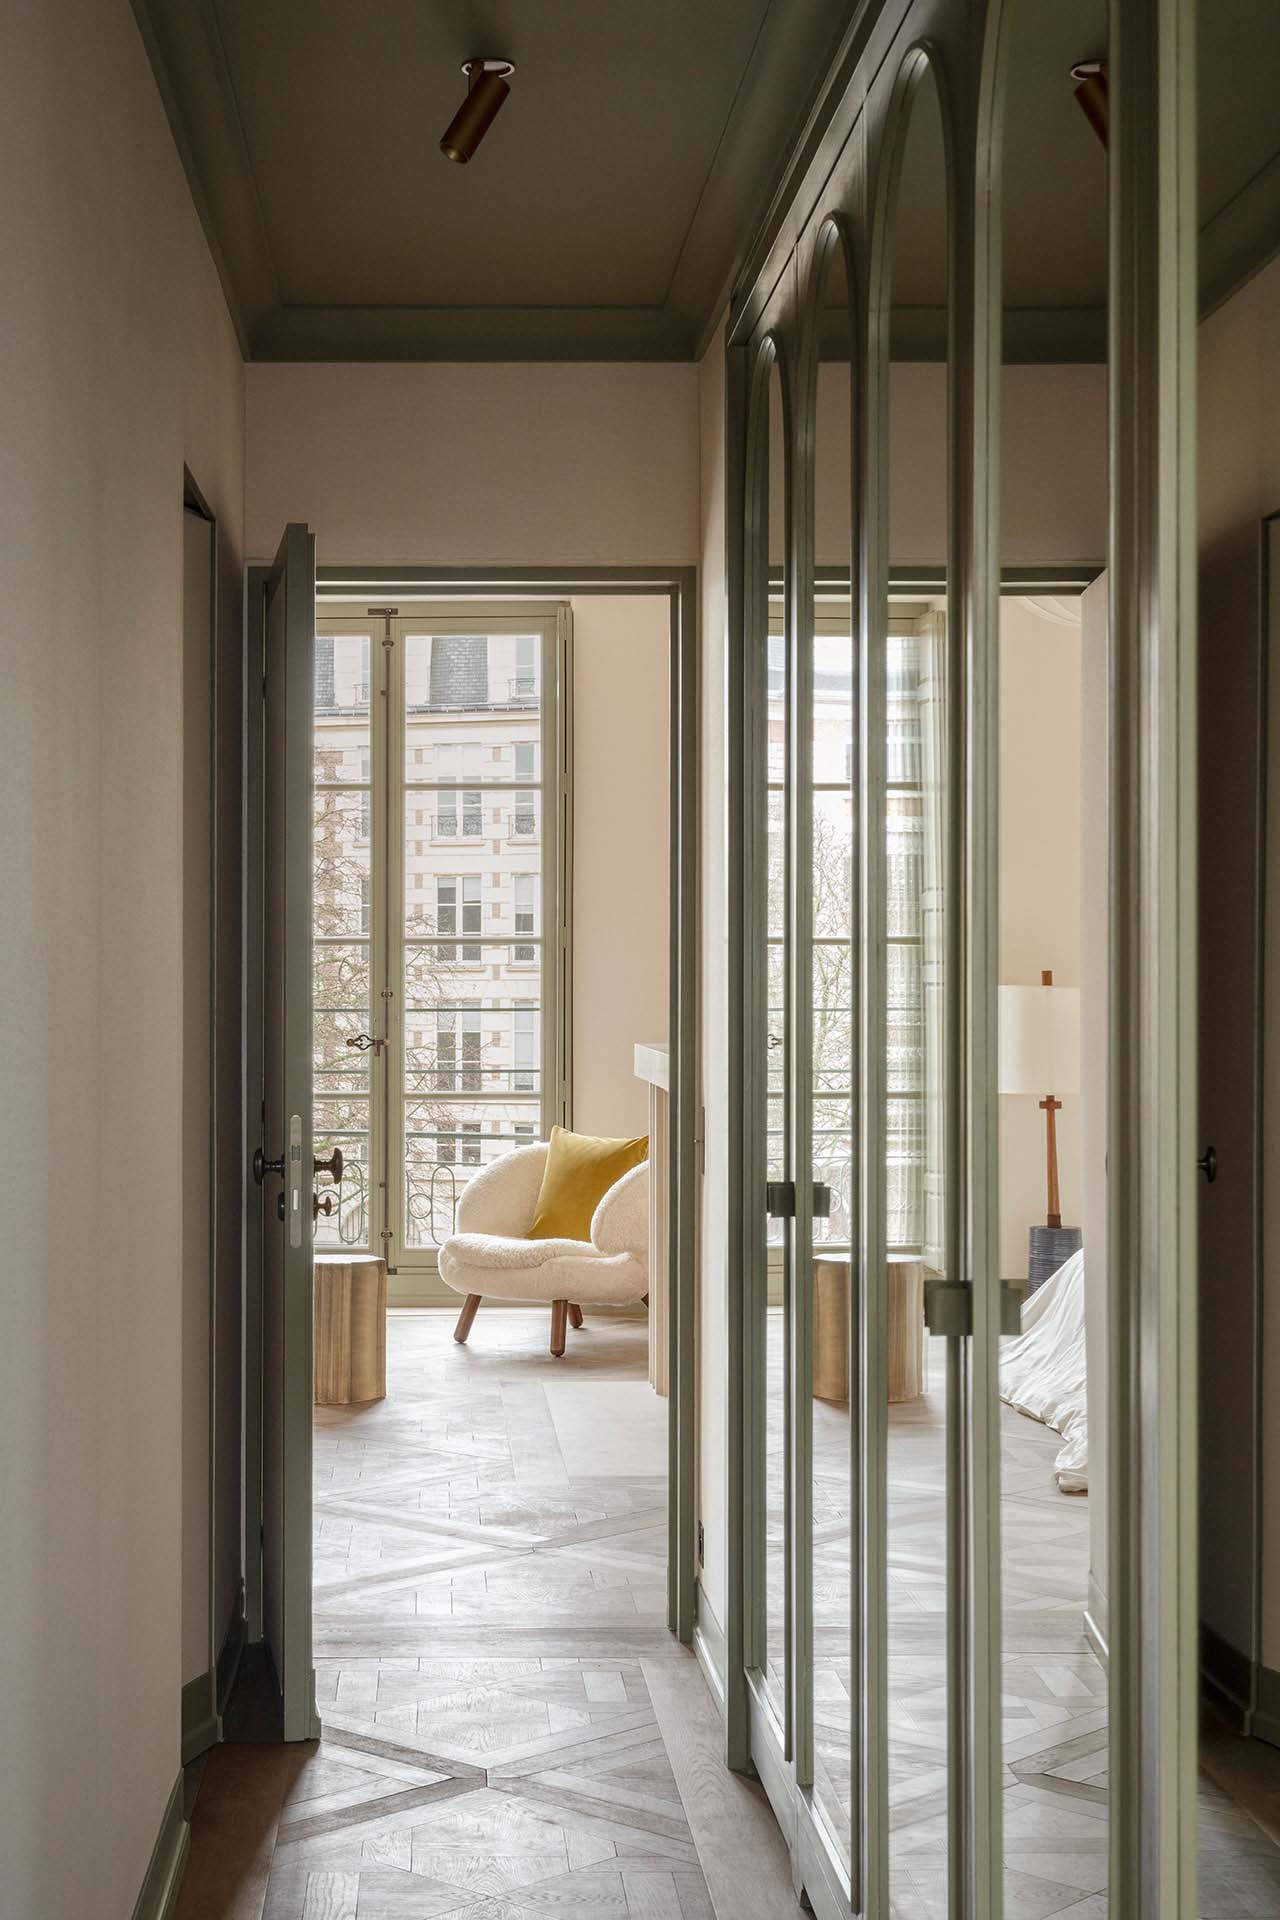 公寓裝修,公寓設計案例,AFTER BACH,巴黎,複古風公寓,公寓設計,藝術公寓,JAG Gallery,Francesco Balzano